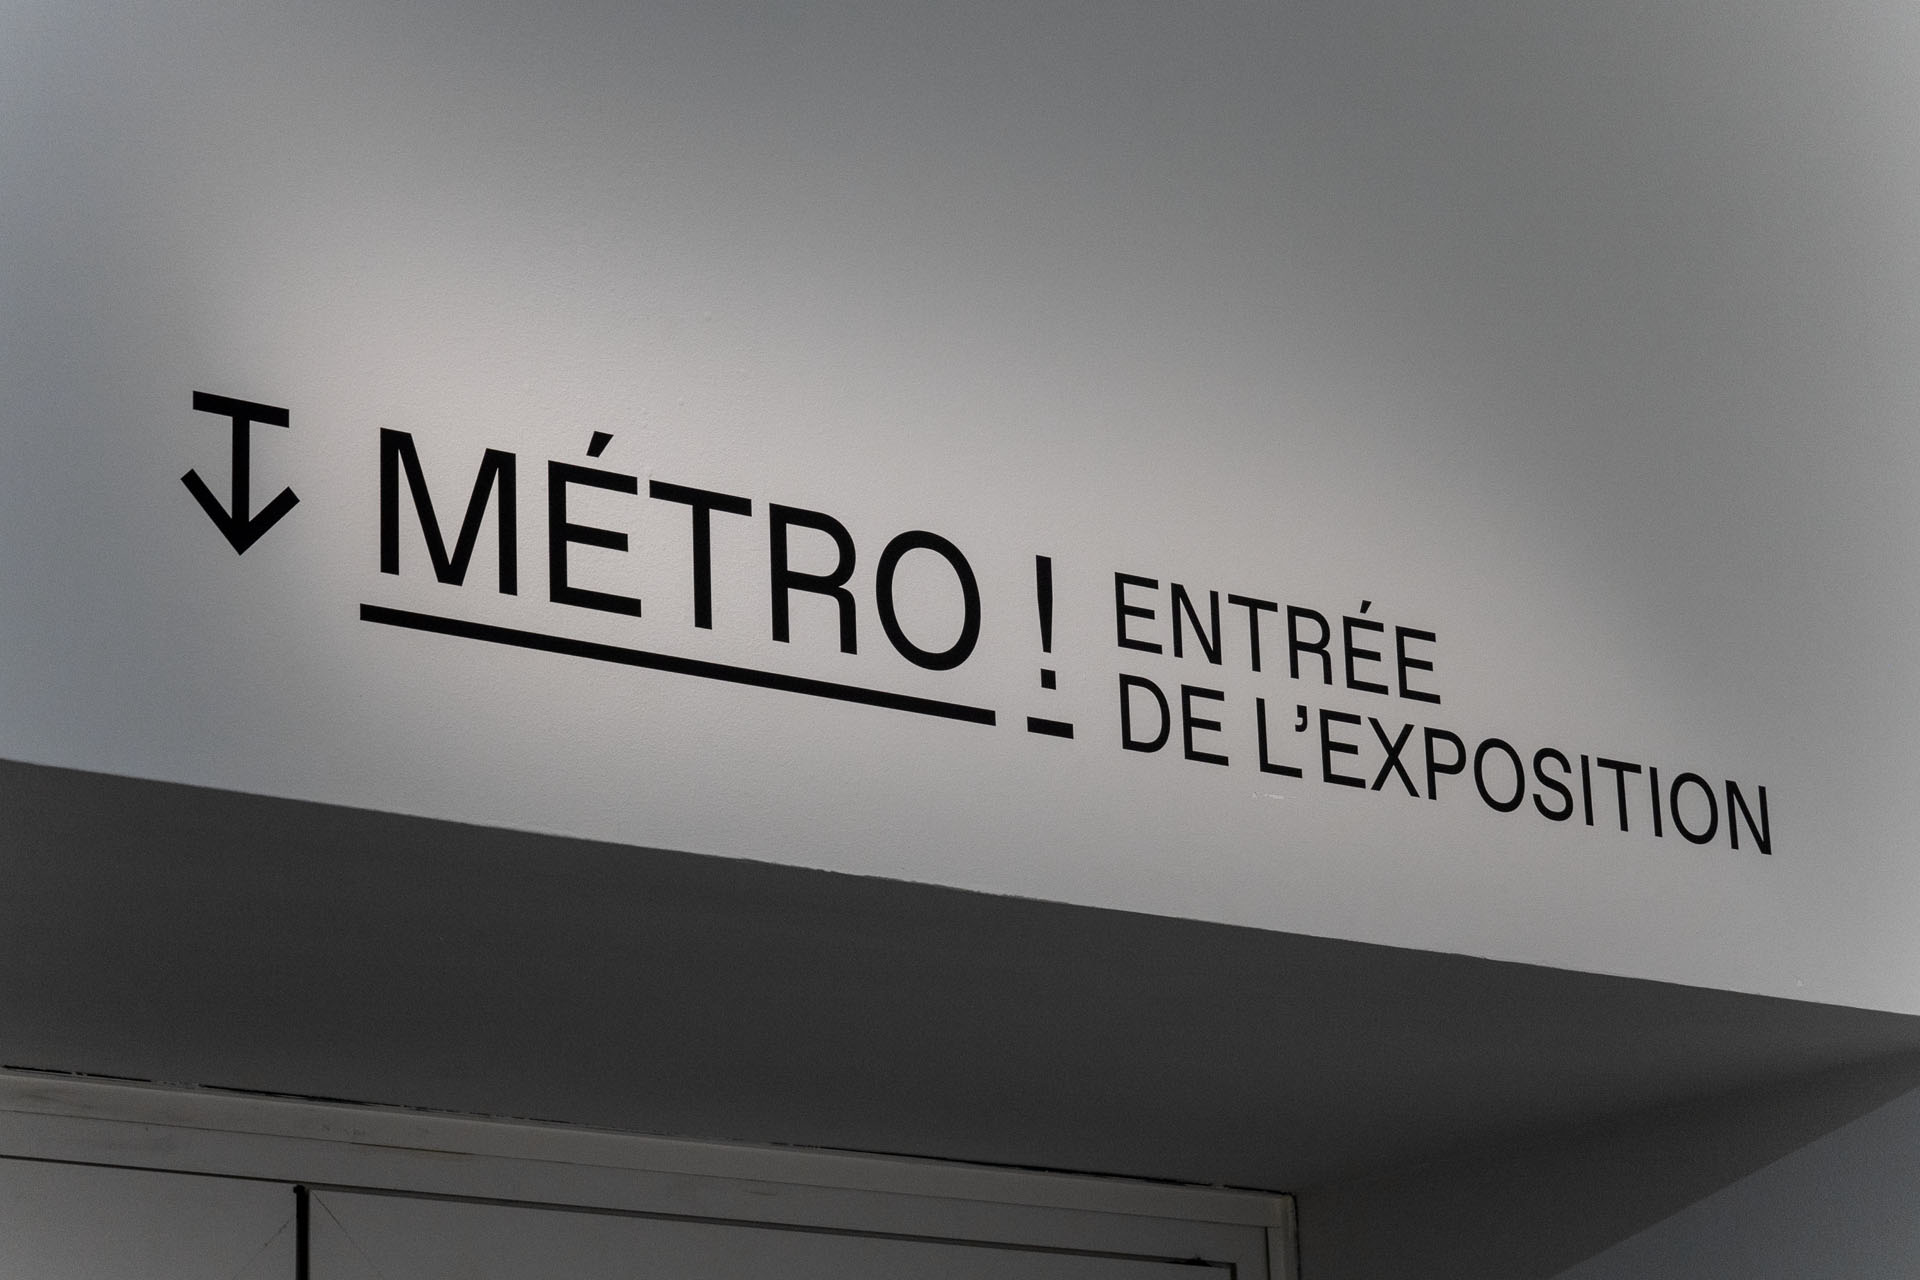 Metro_Grand_Paris_Exposition_Cité_Architecture_Plastac_Graphisme_Signaletique